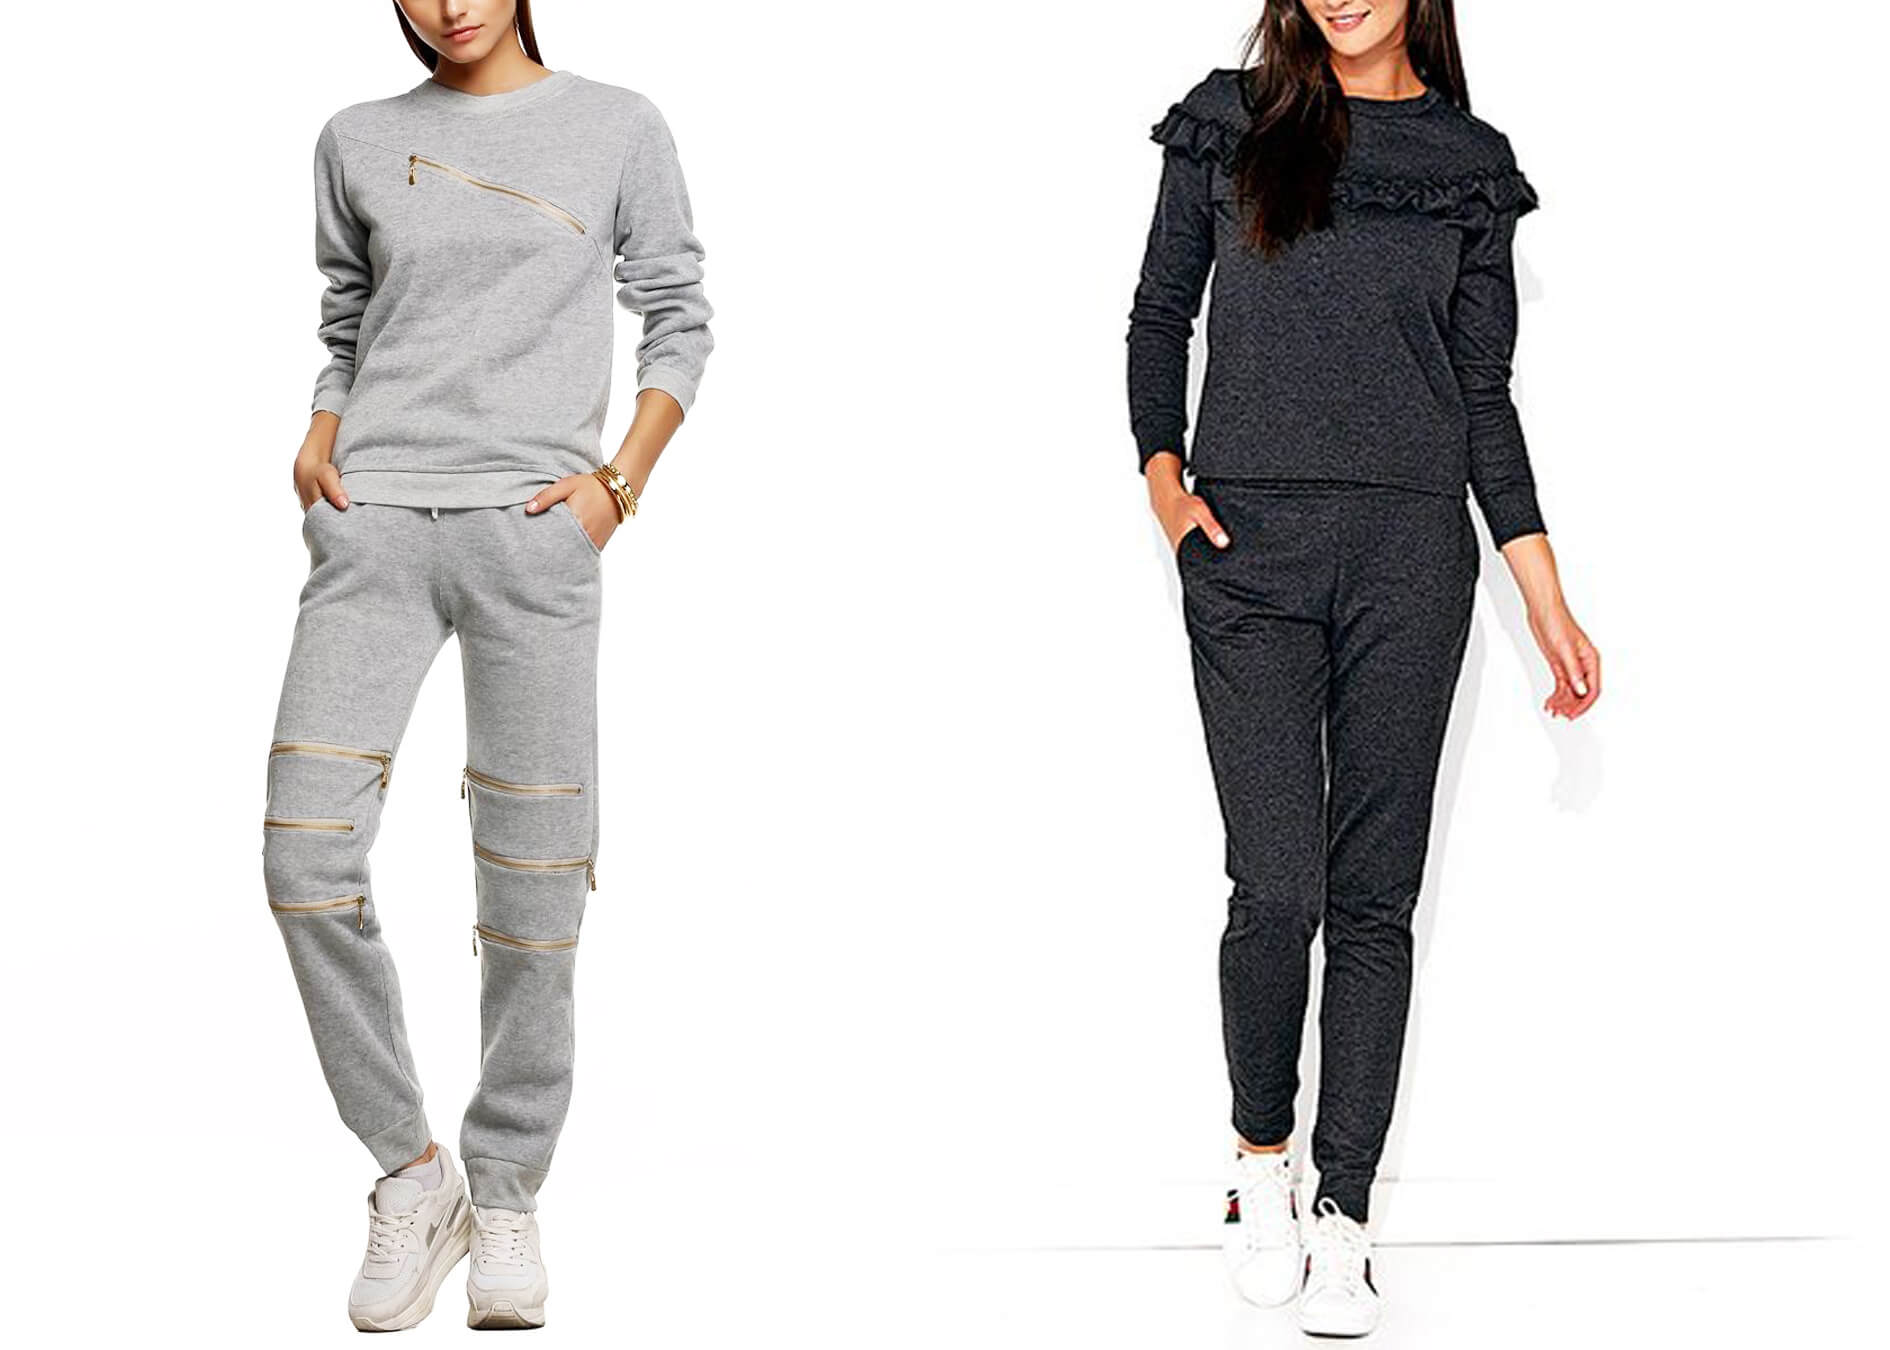 Sweater nữ phối quần Jogger (Nguồn hình: google)